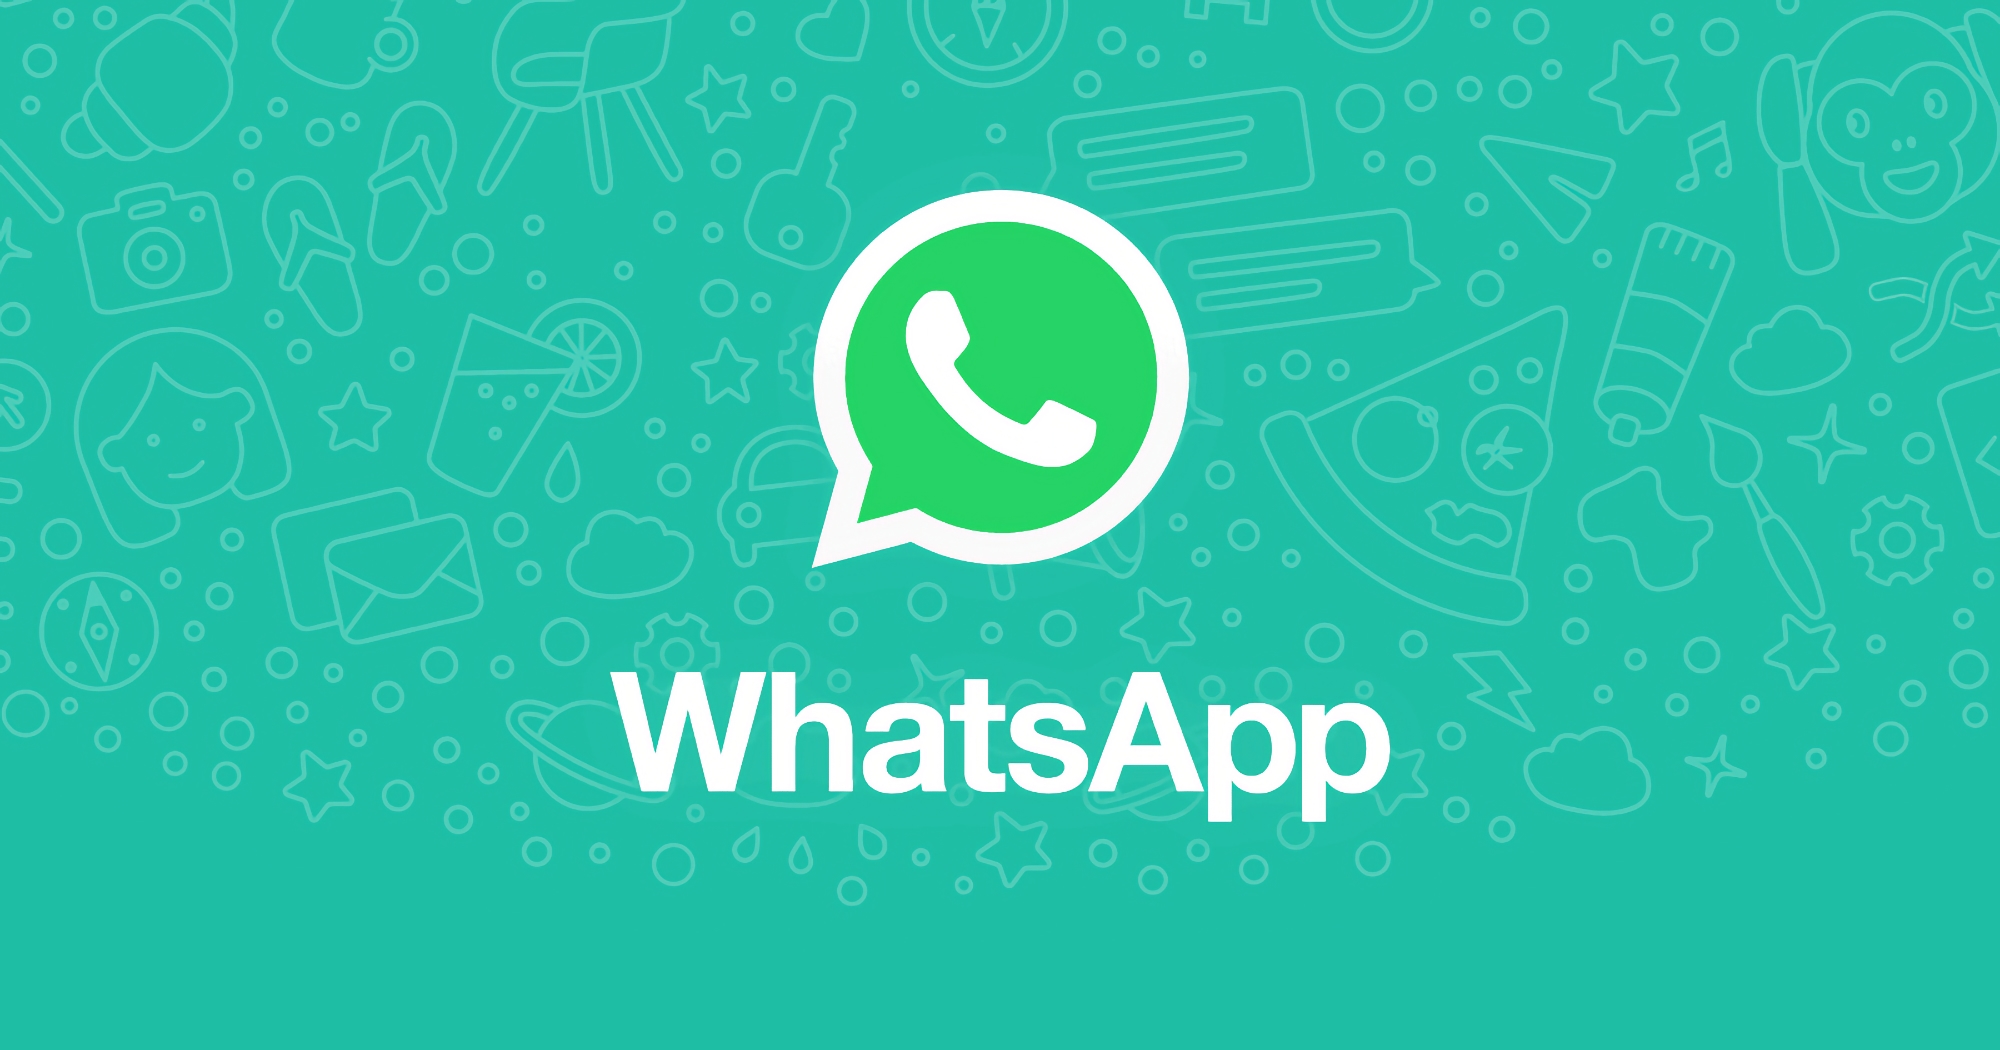 Meta sta preparando nuove funzionalità per WhatsApp, già in fase di test su Android, iOS e PC